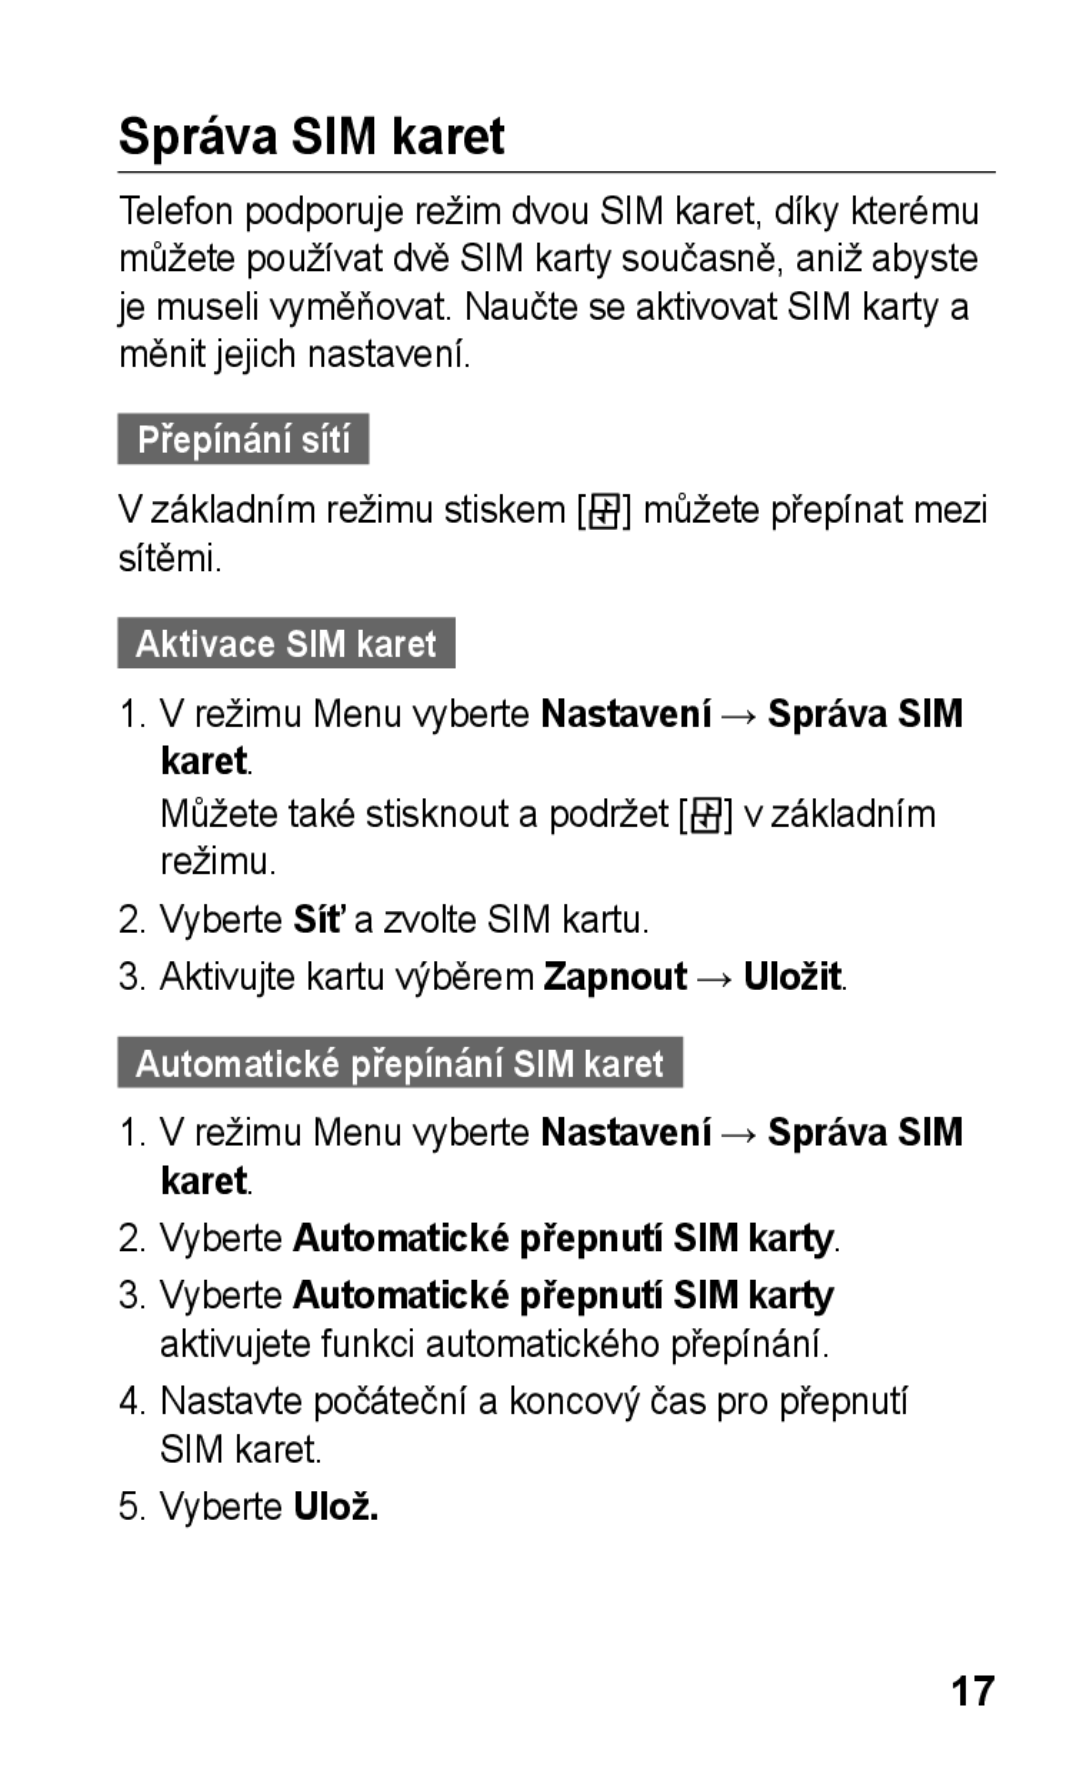 Samsung GT-E2652DKWXEZ manual Správa SIM karet, Přepínání sítí, Základním režimu stiskem můžete přepínat mezi sítěmi 